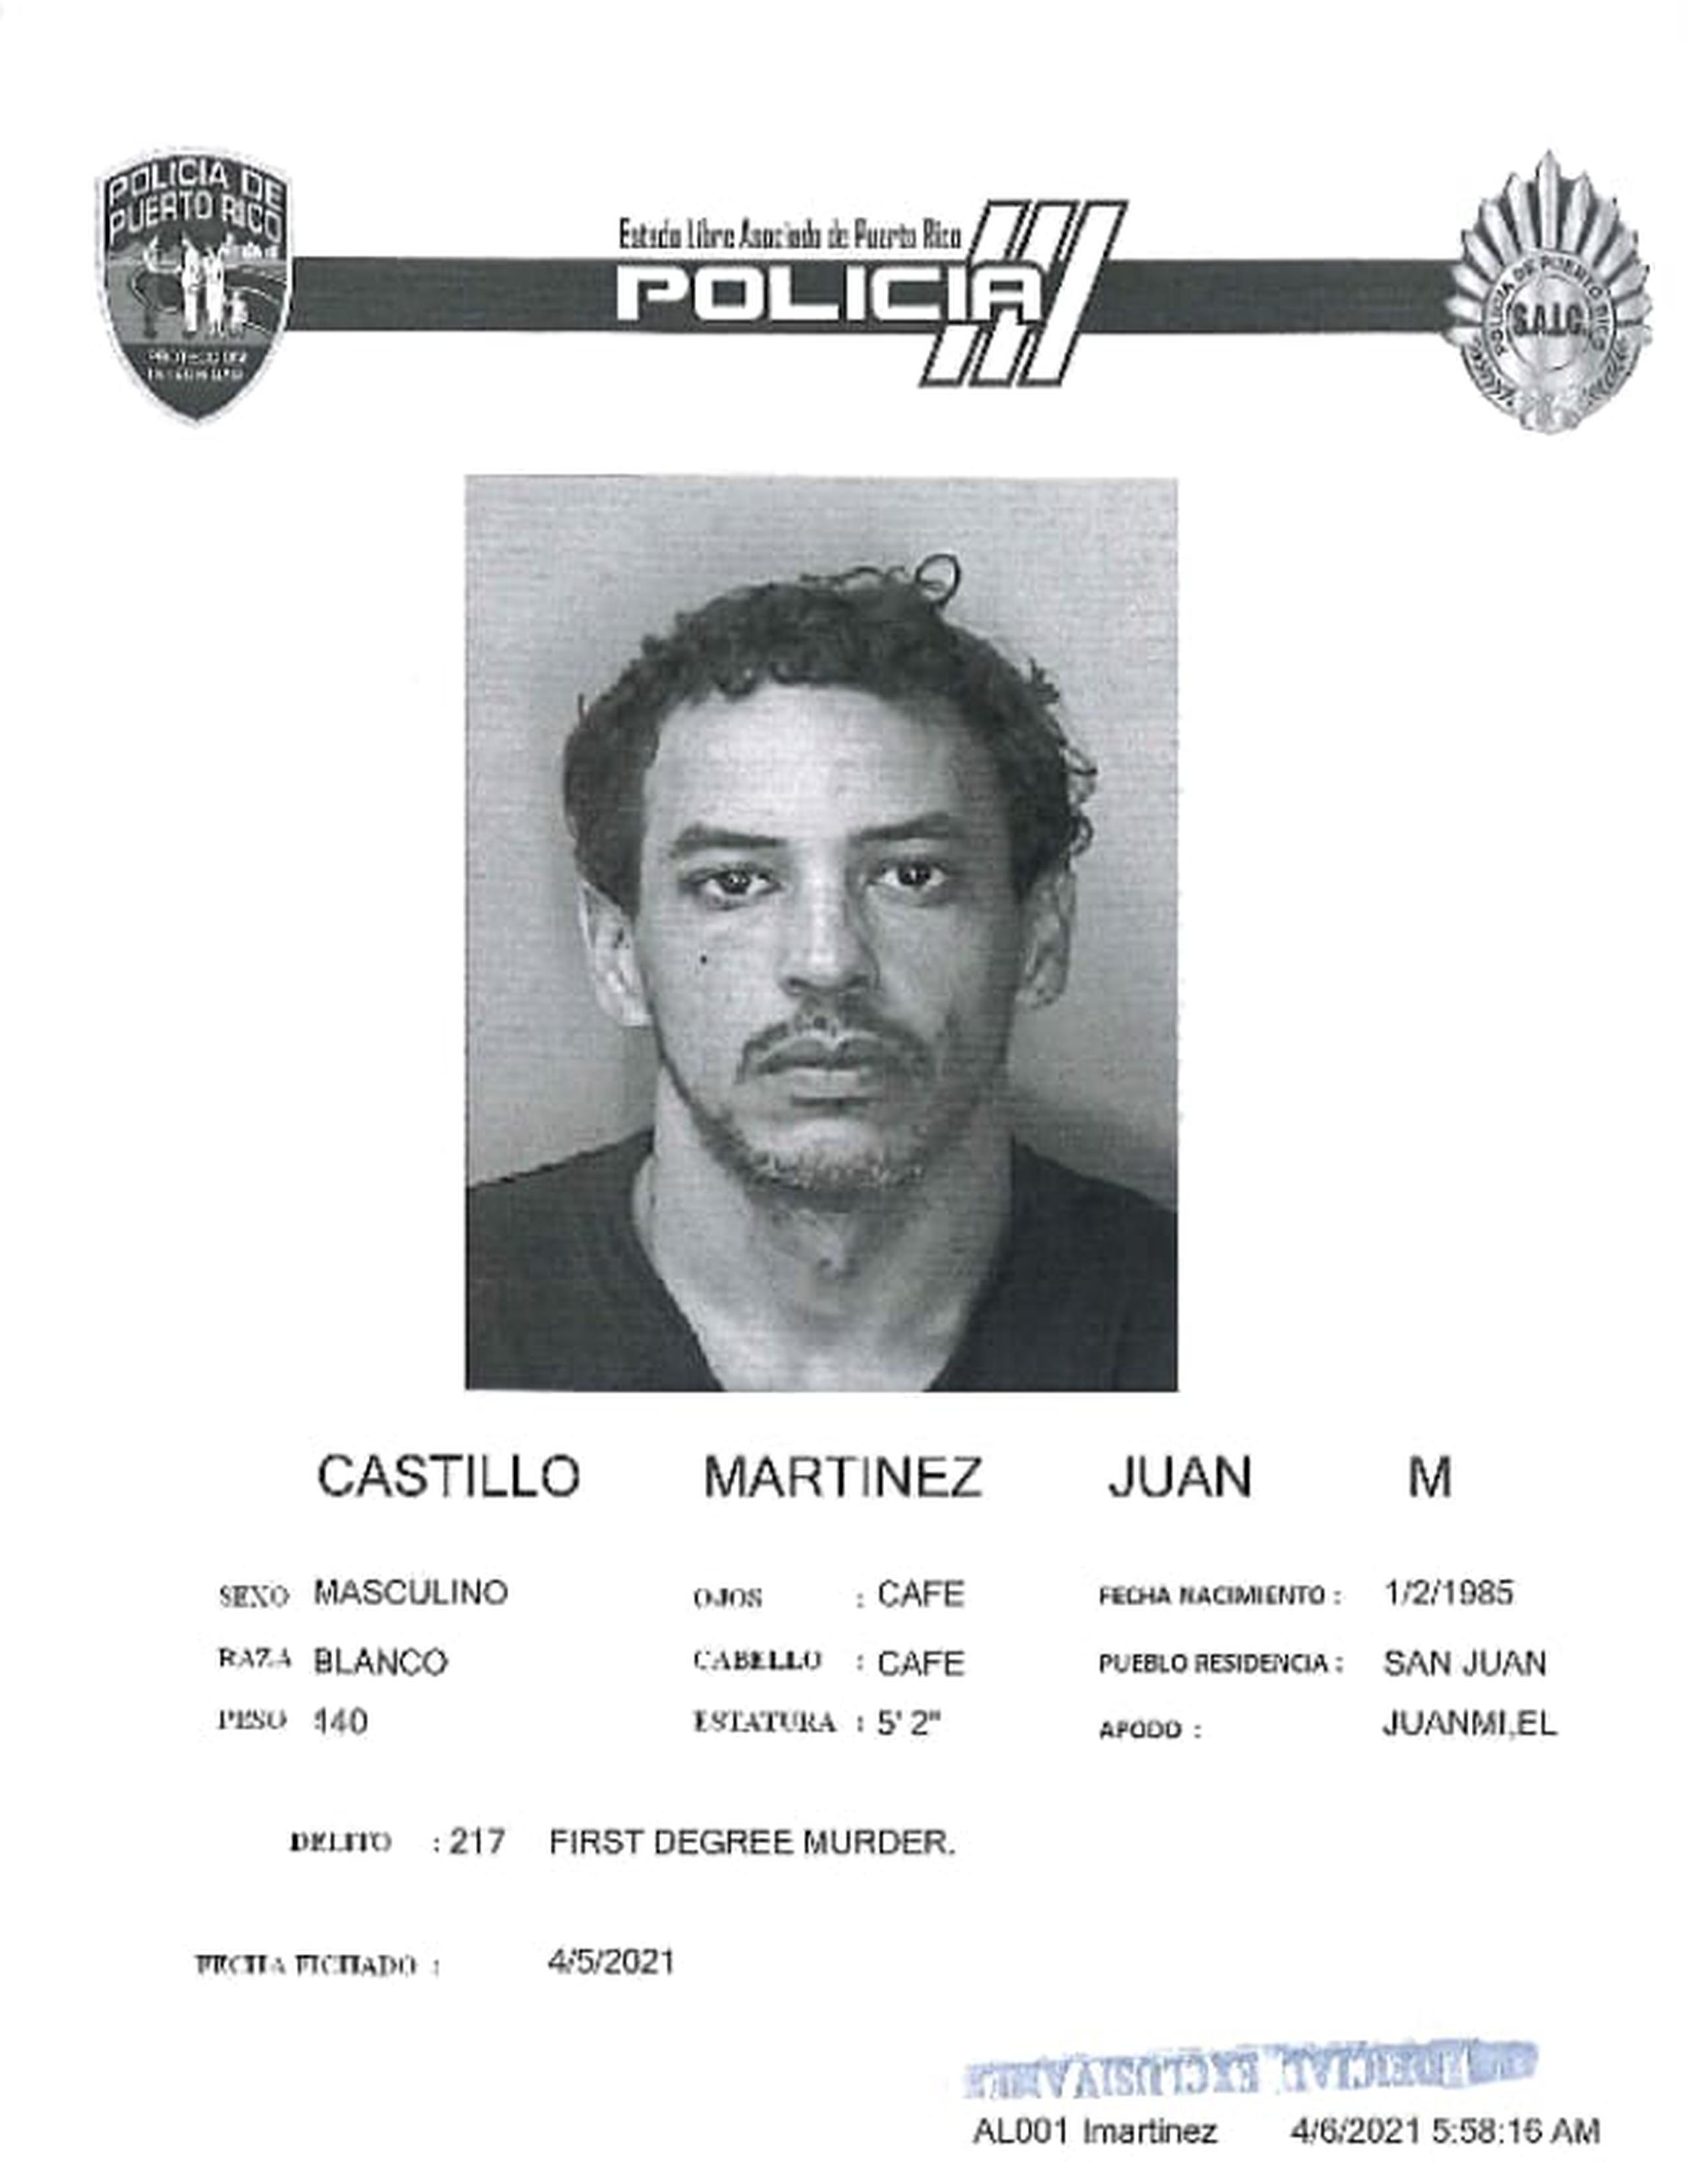 Juan M. Castillo Martínez, de 36 años, falleció en prisión durante el proceso. 